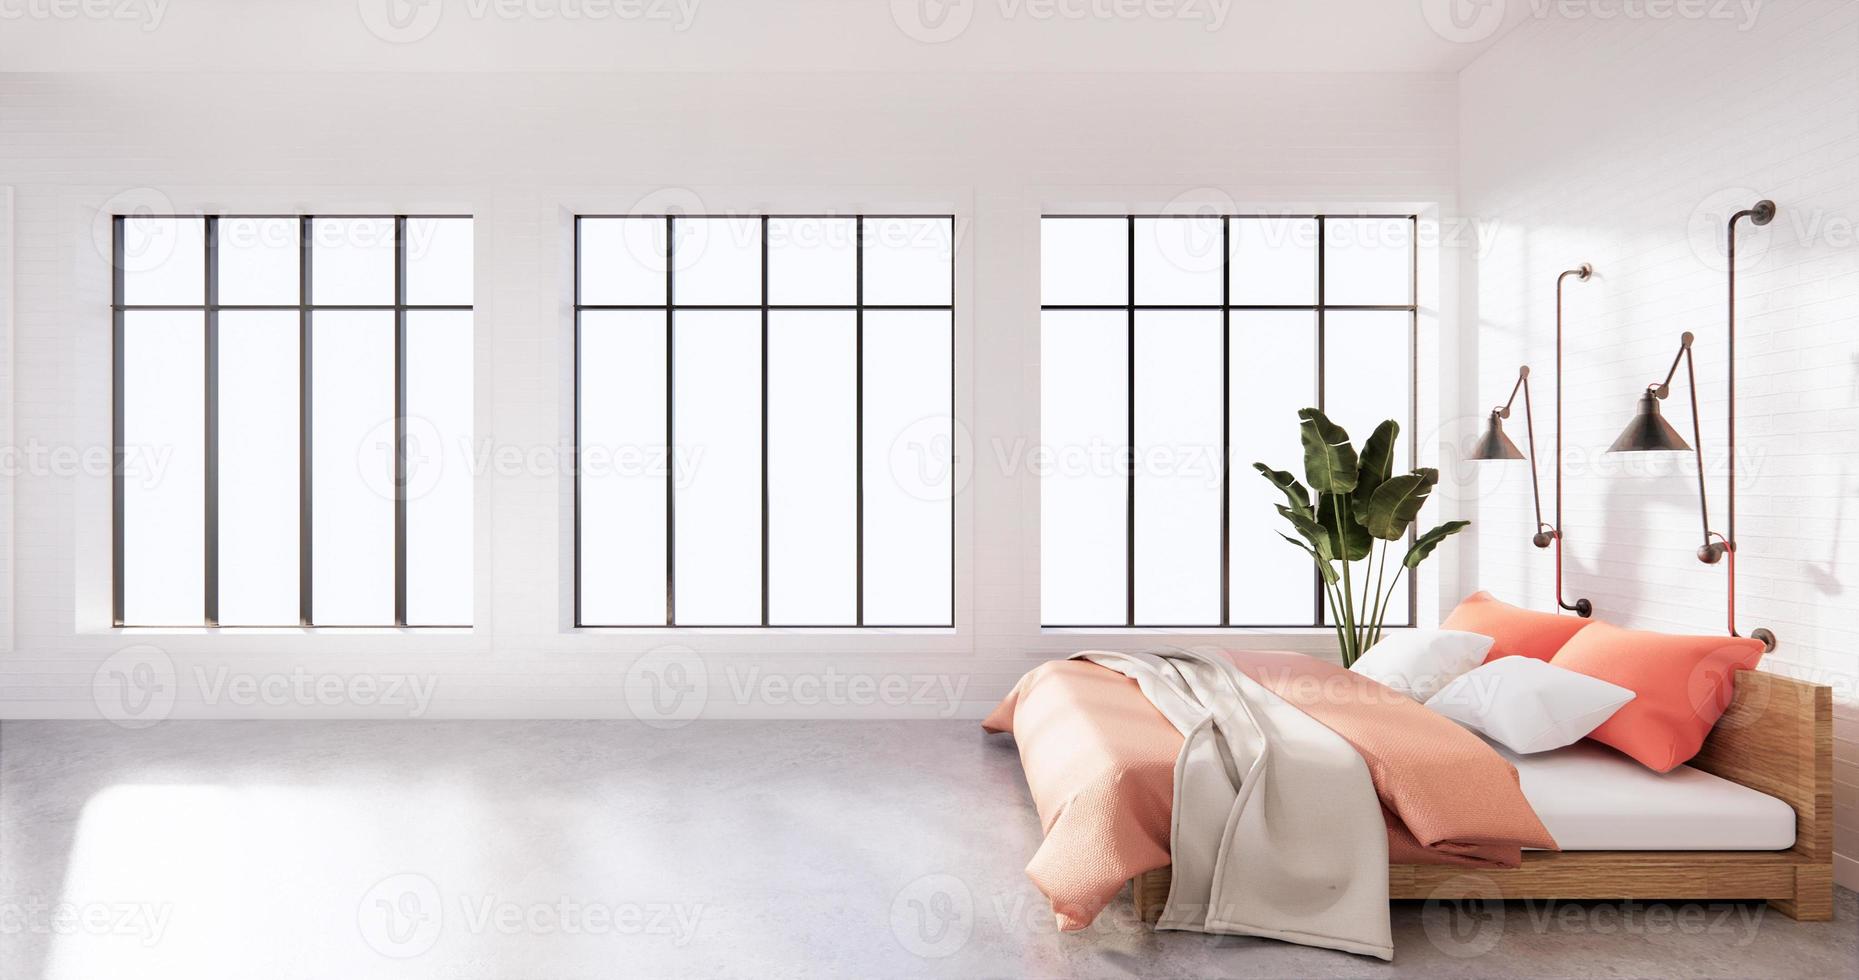 sovrum interiör loft stil med ram på vit vägg tegel. 3d-rendering foto